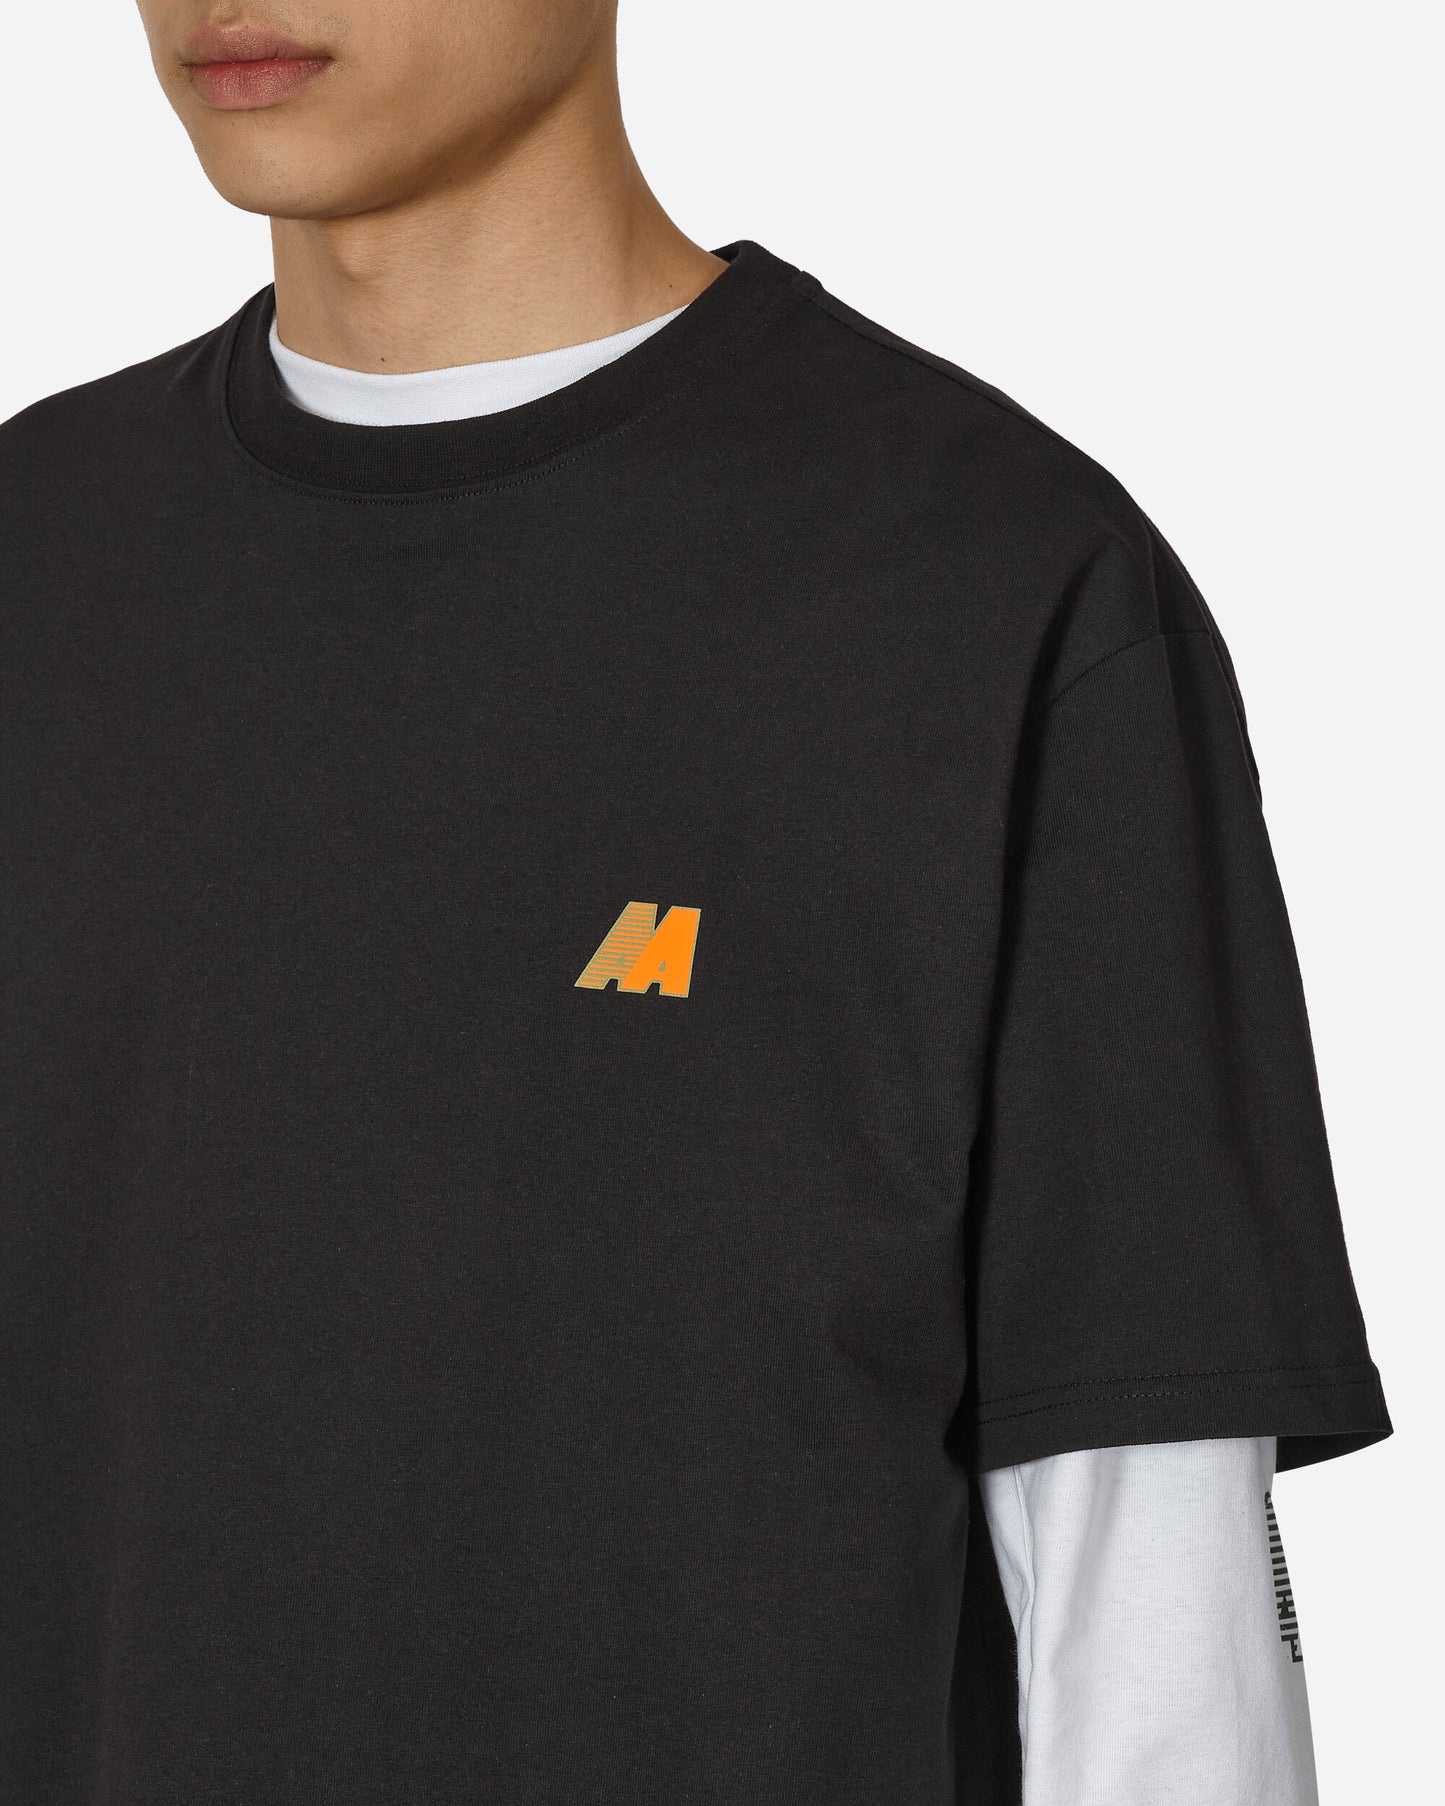 Automobili Amos Amos T-Shirt Black/Orange T-Shirts Shortsleeve C1AATS01 BLACKORANGE